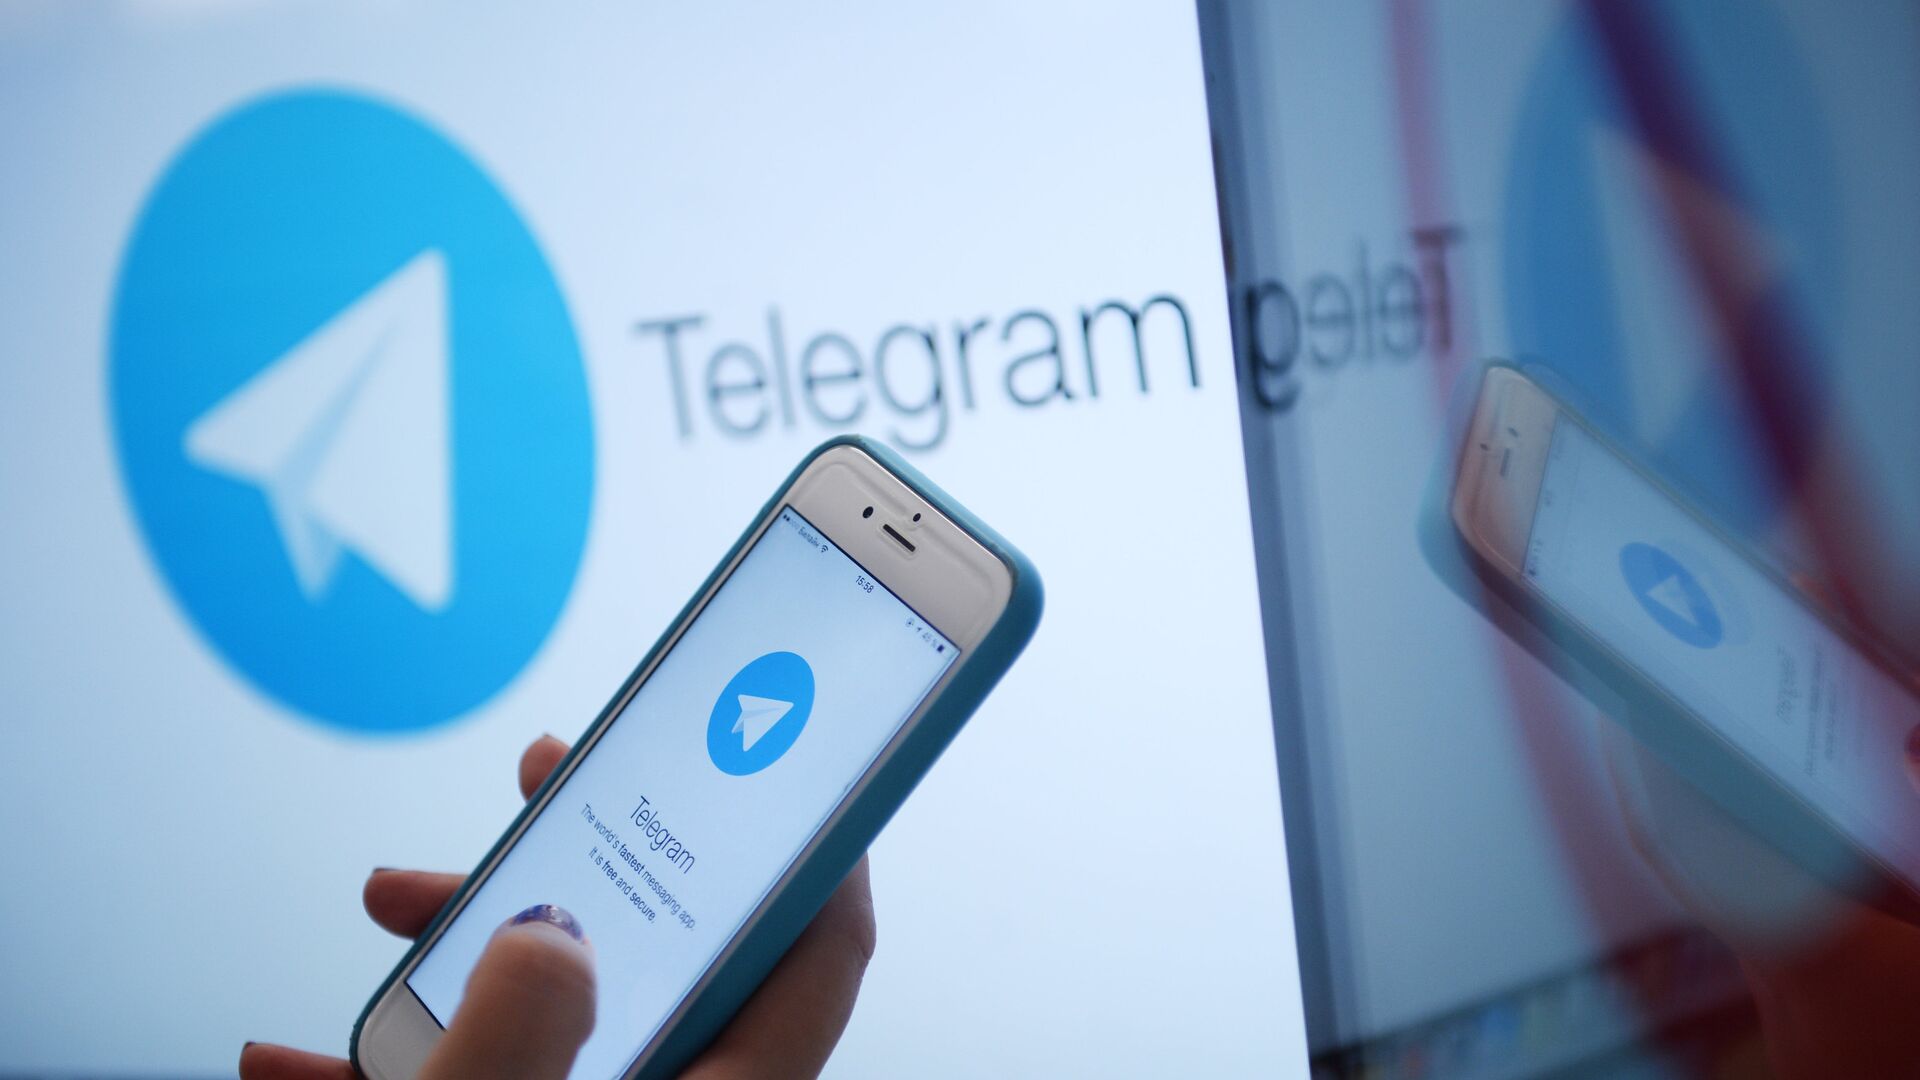 В работе Telegram произошел сбой